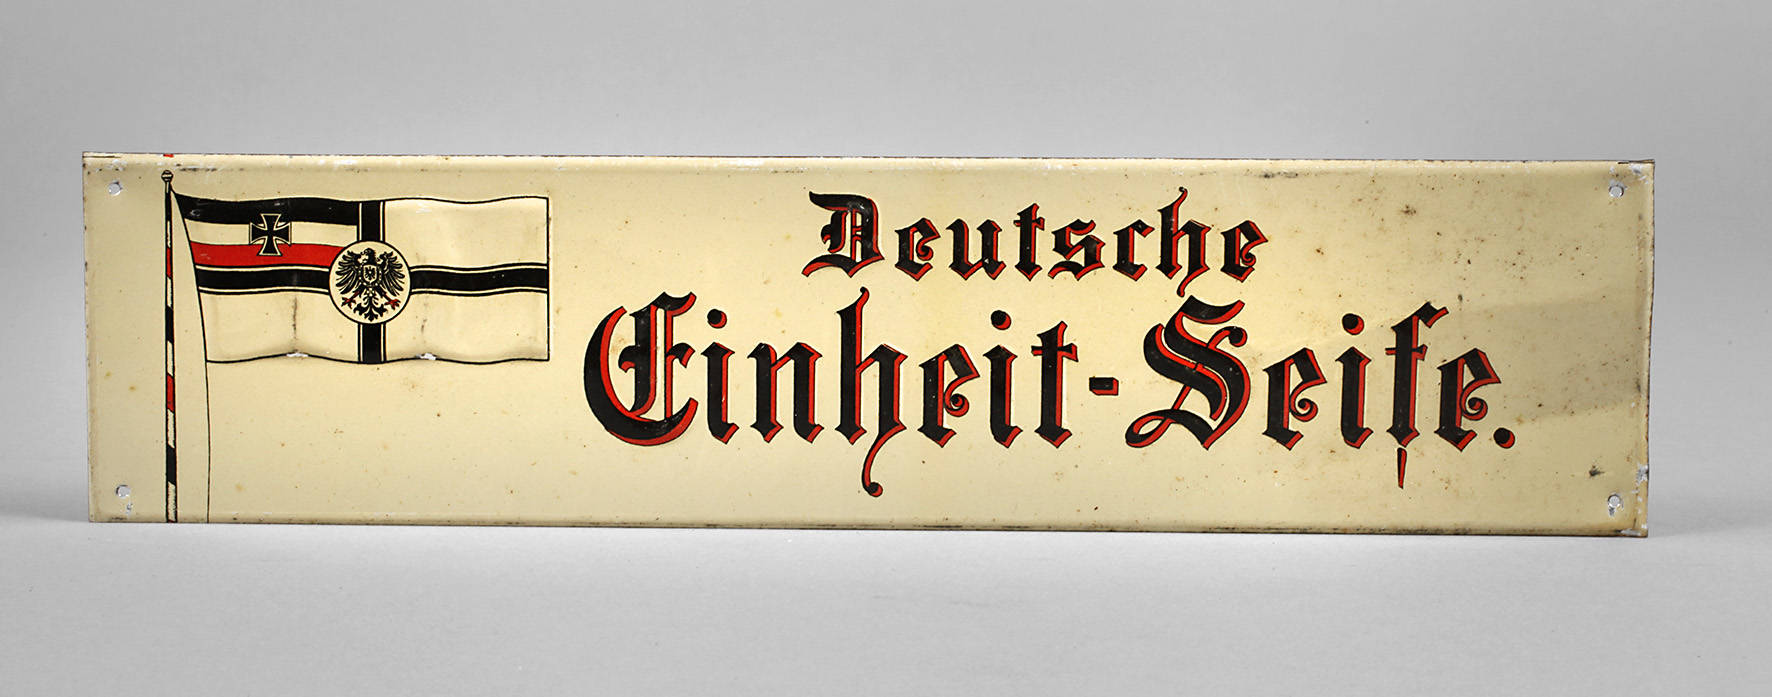 Werbeschild Deutsche Einheit-Seife